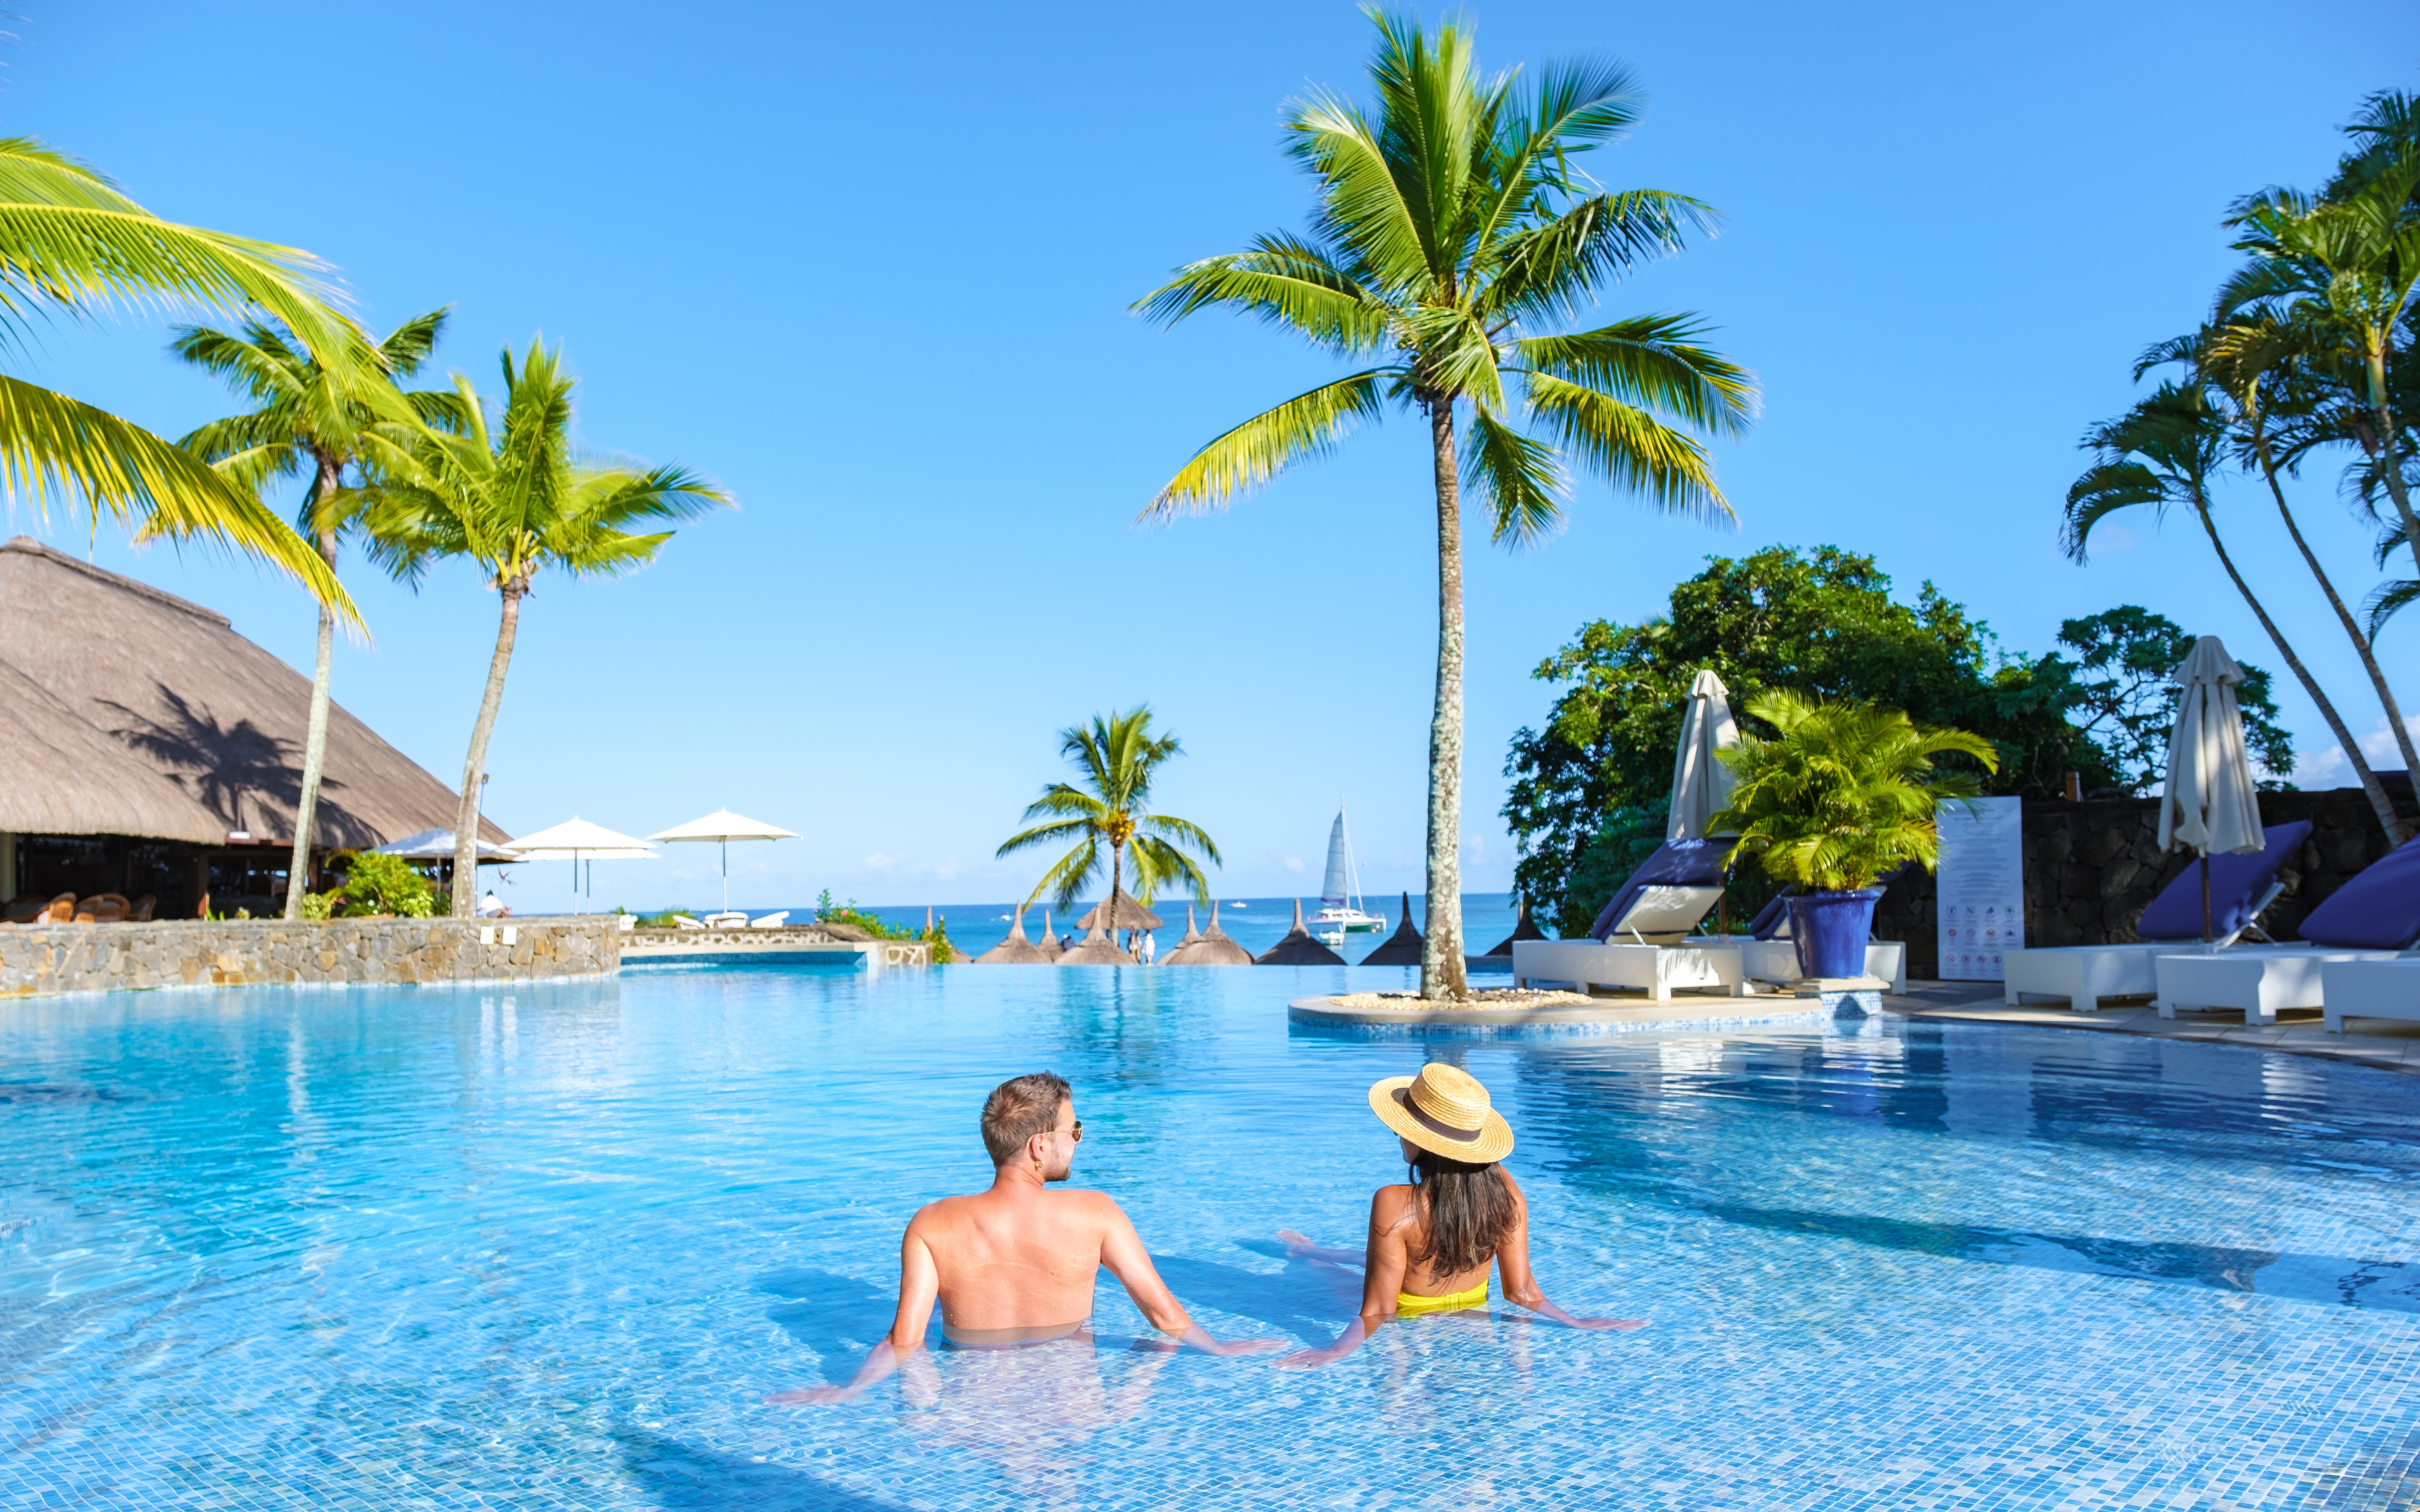 Un couple se détend dans une piscine pendant les vacances | Source : Shutterstock